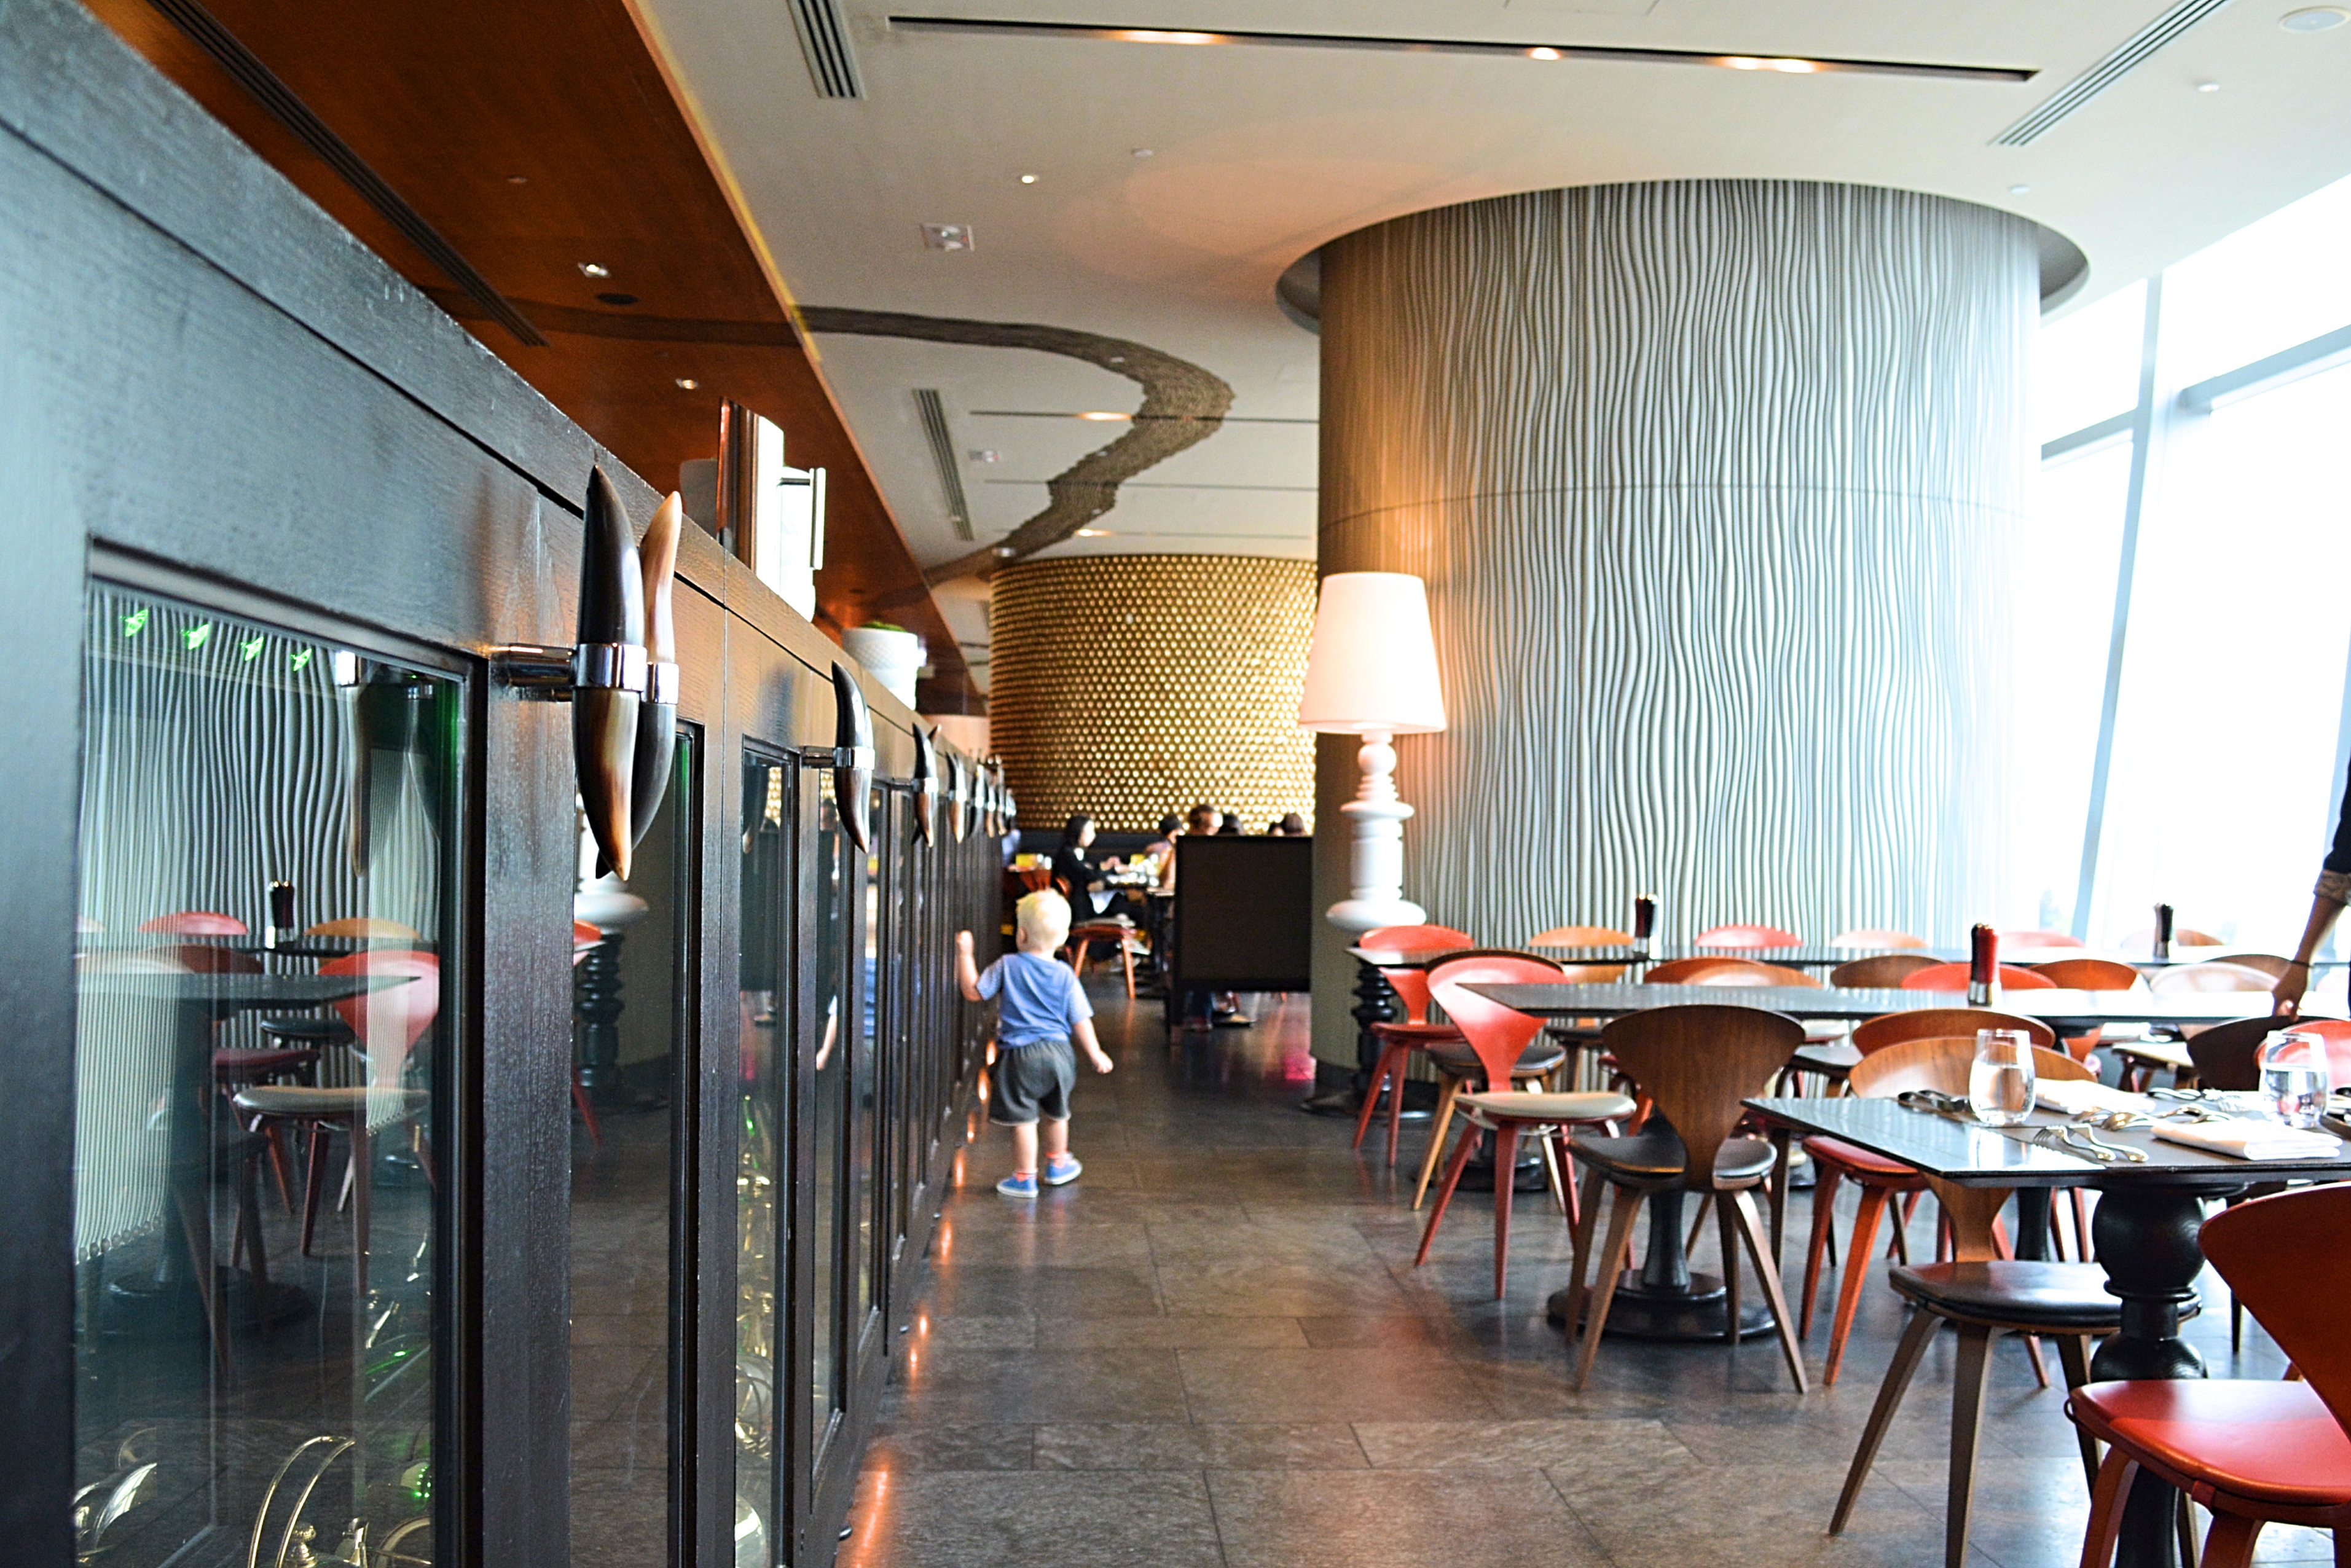 Asia Hong Kong W Hotels Kitchen Restaurant LunchDSC 0393 Fotor 